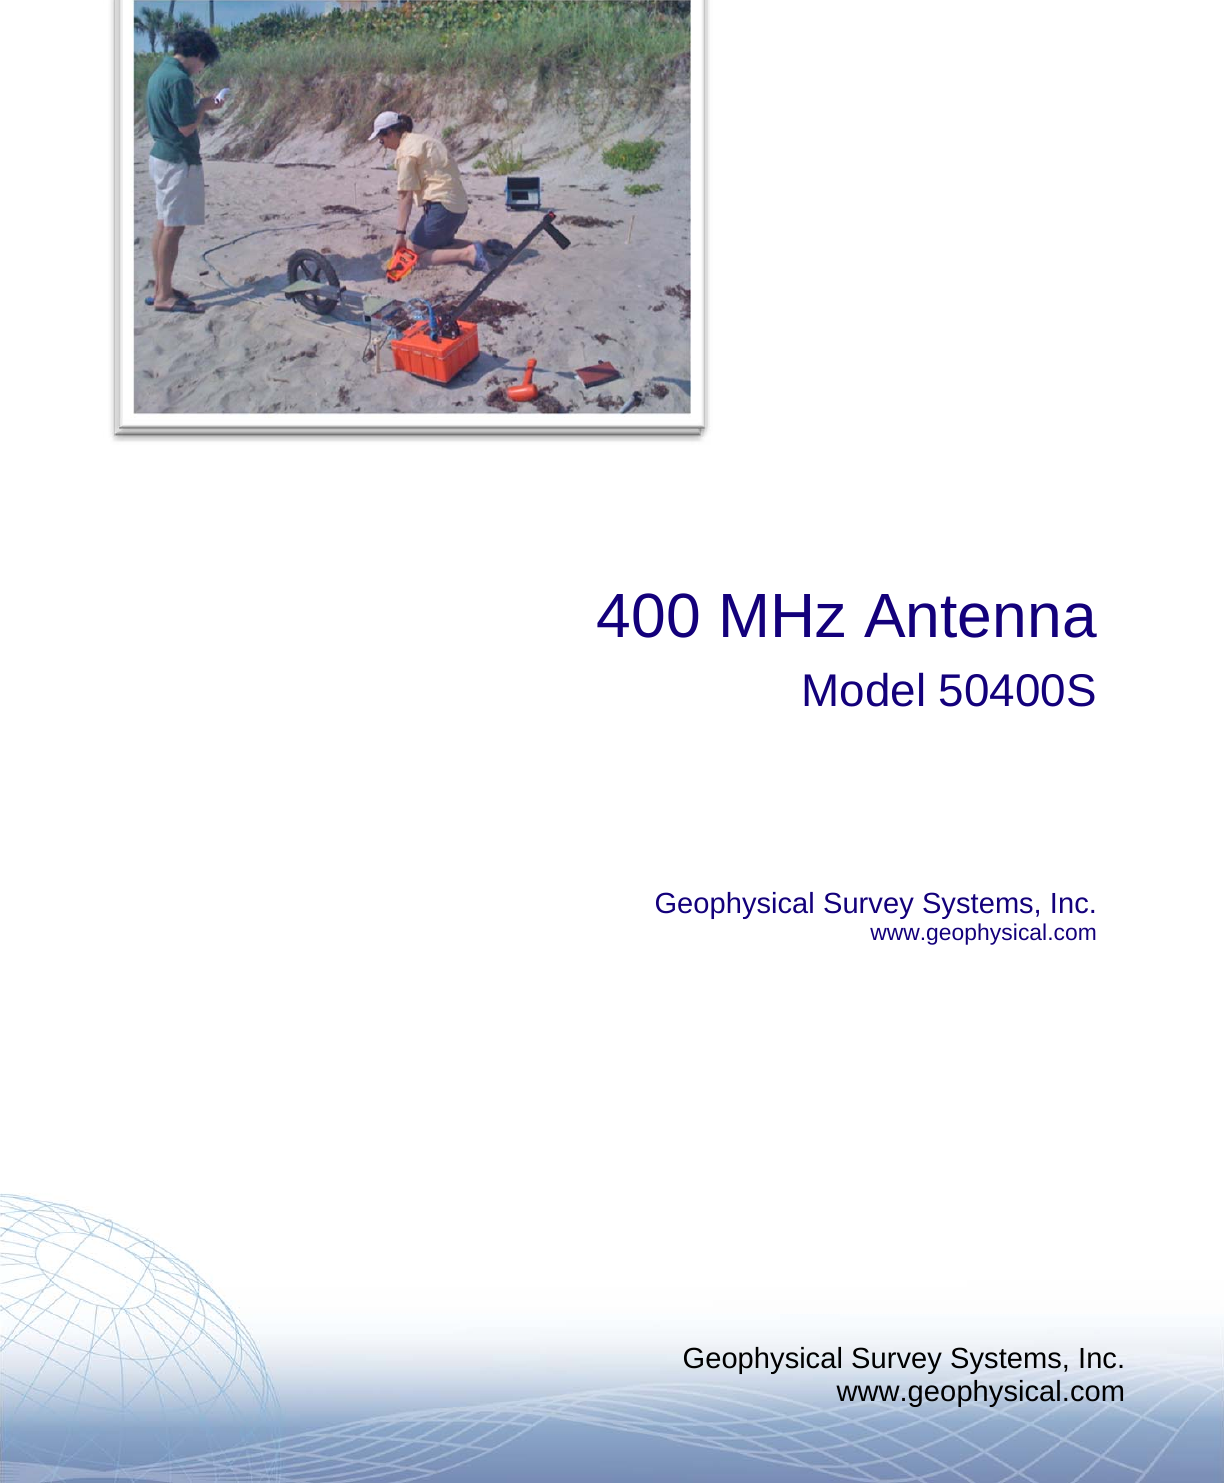 Geophysical Survey Systems, Inc. www.geophysical.com         400 MHz Antenna Model 50400S    Geophysical Survey Systems, Inc. www.geophysical.com     